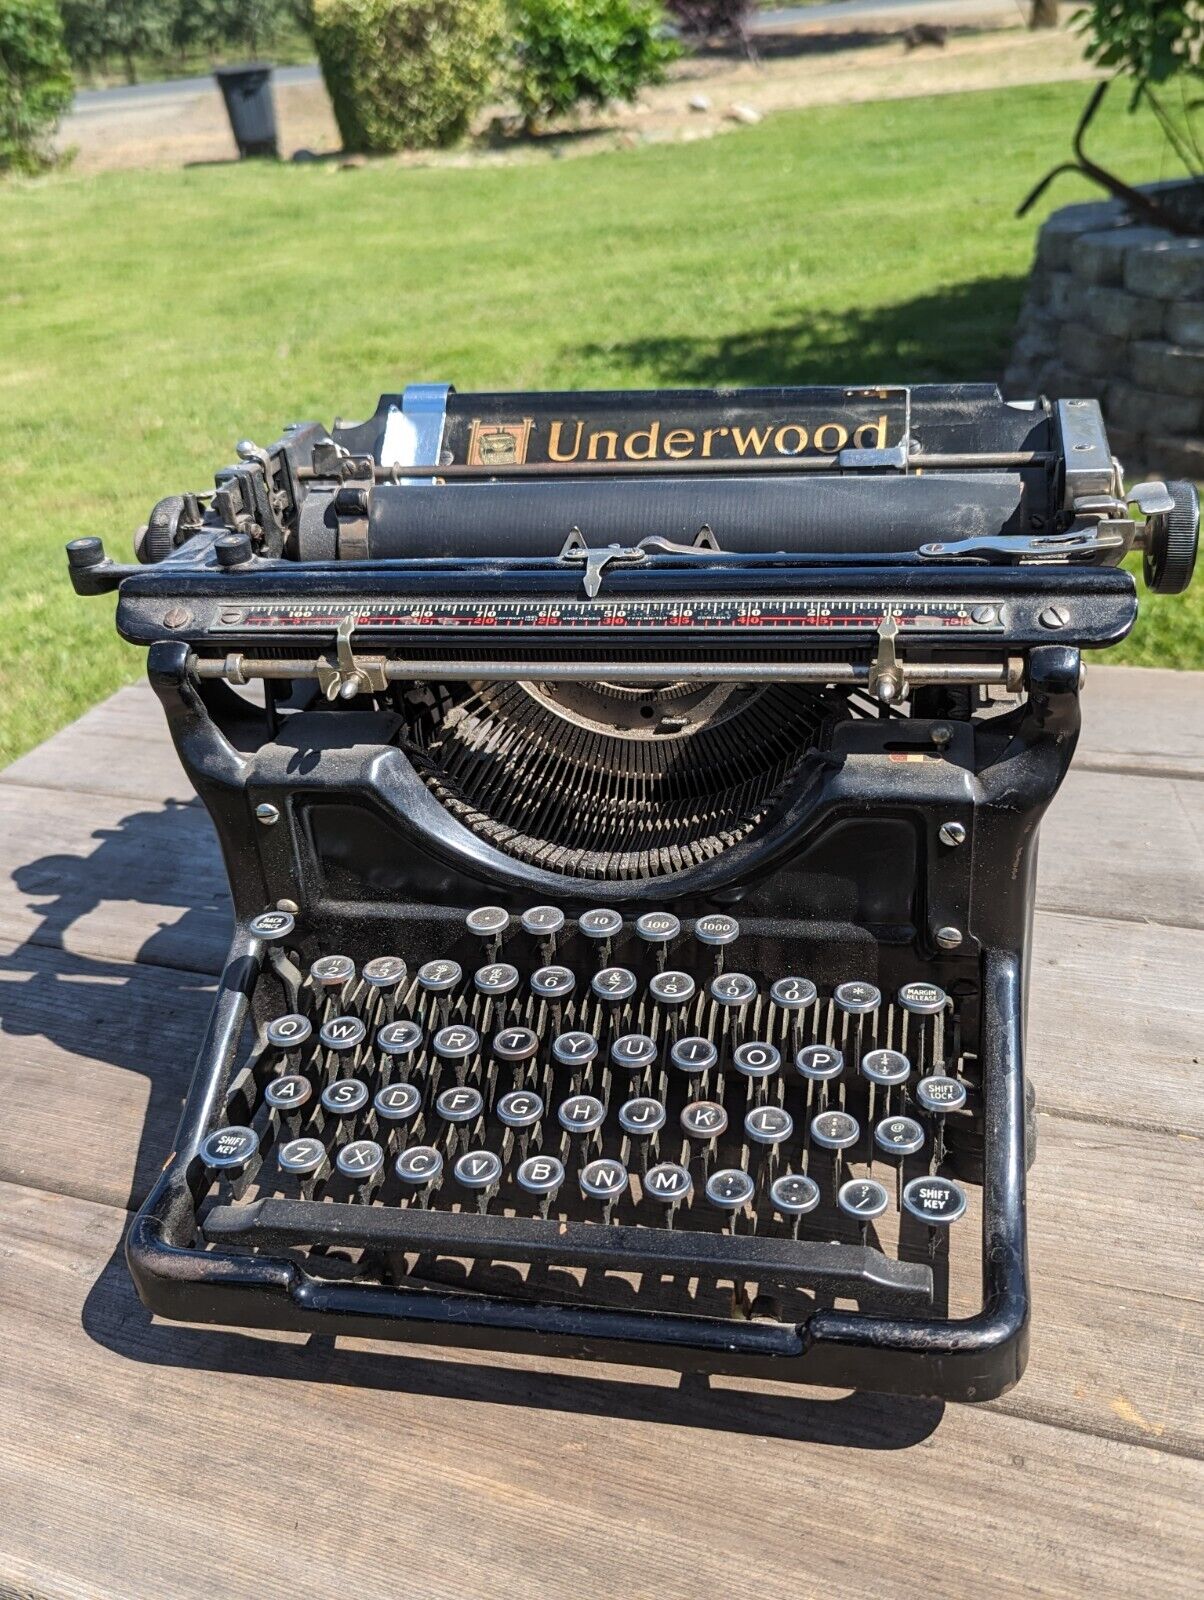 VTG Antique Underwood No. 6 Standard Typewriter 1935 - AS IS